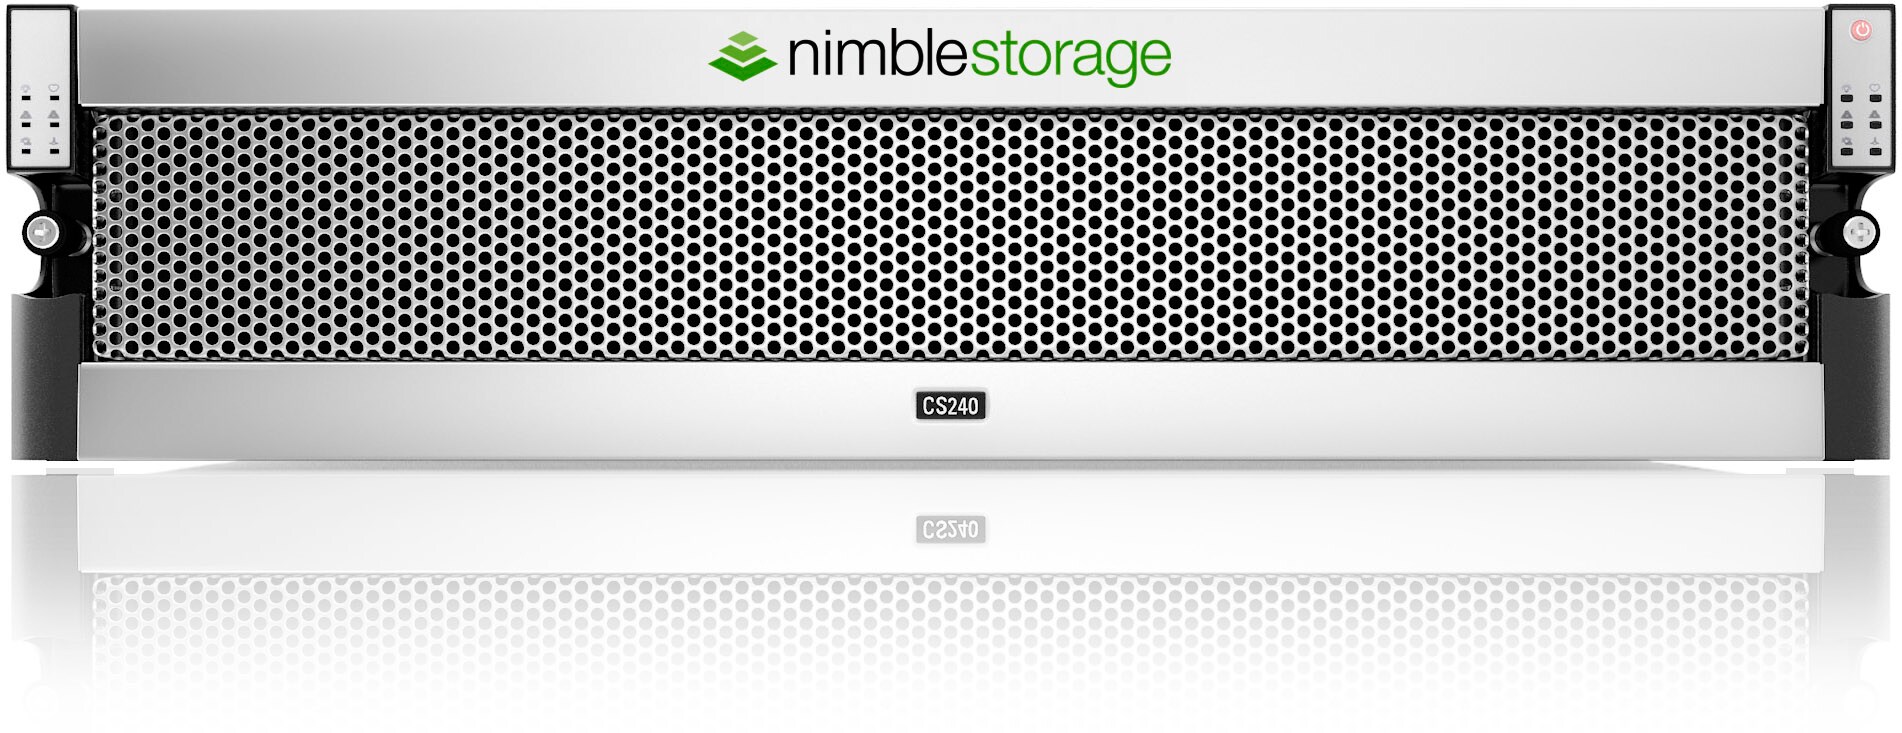 Nimble Storage Expansion Shelves ES1-Series ES1-H85 - storage enclosure